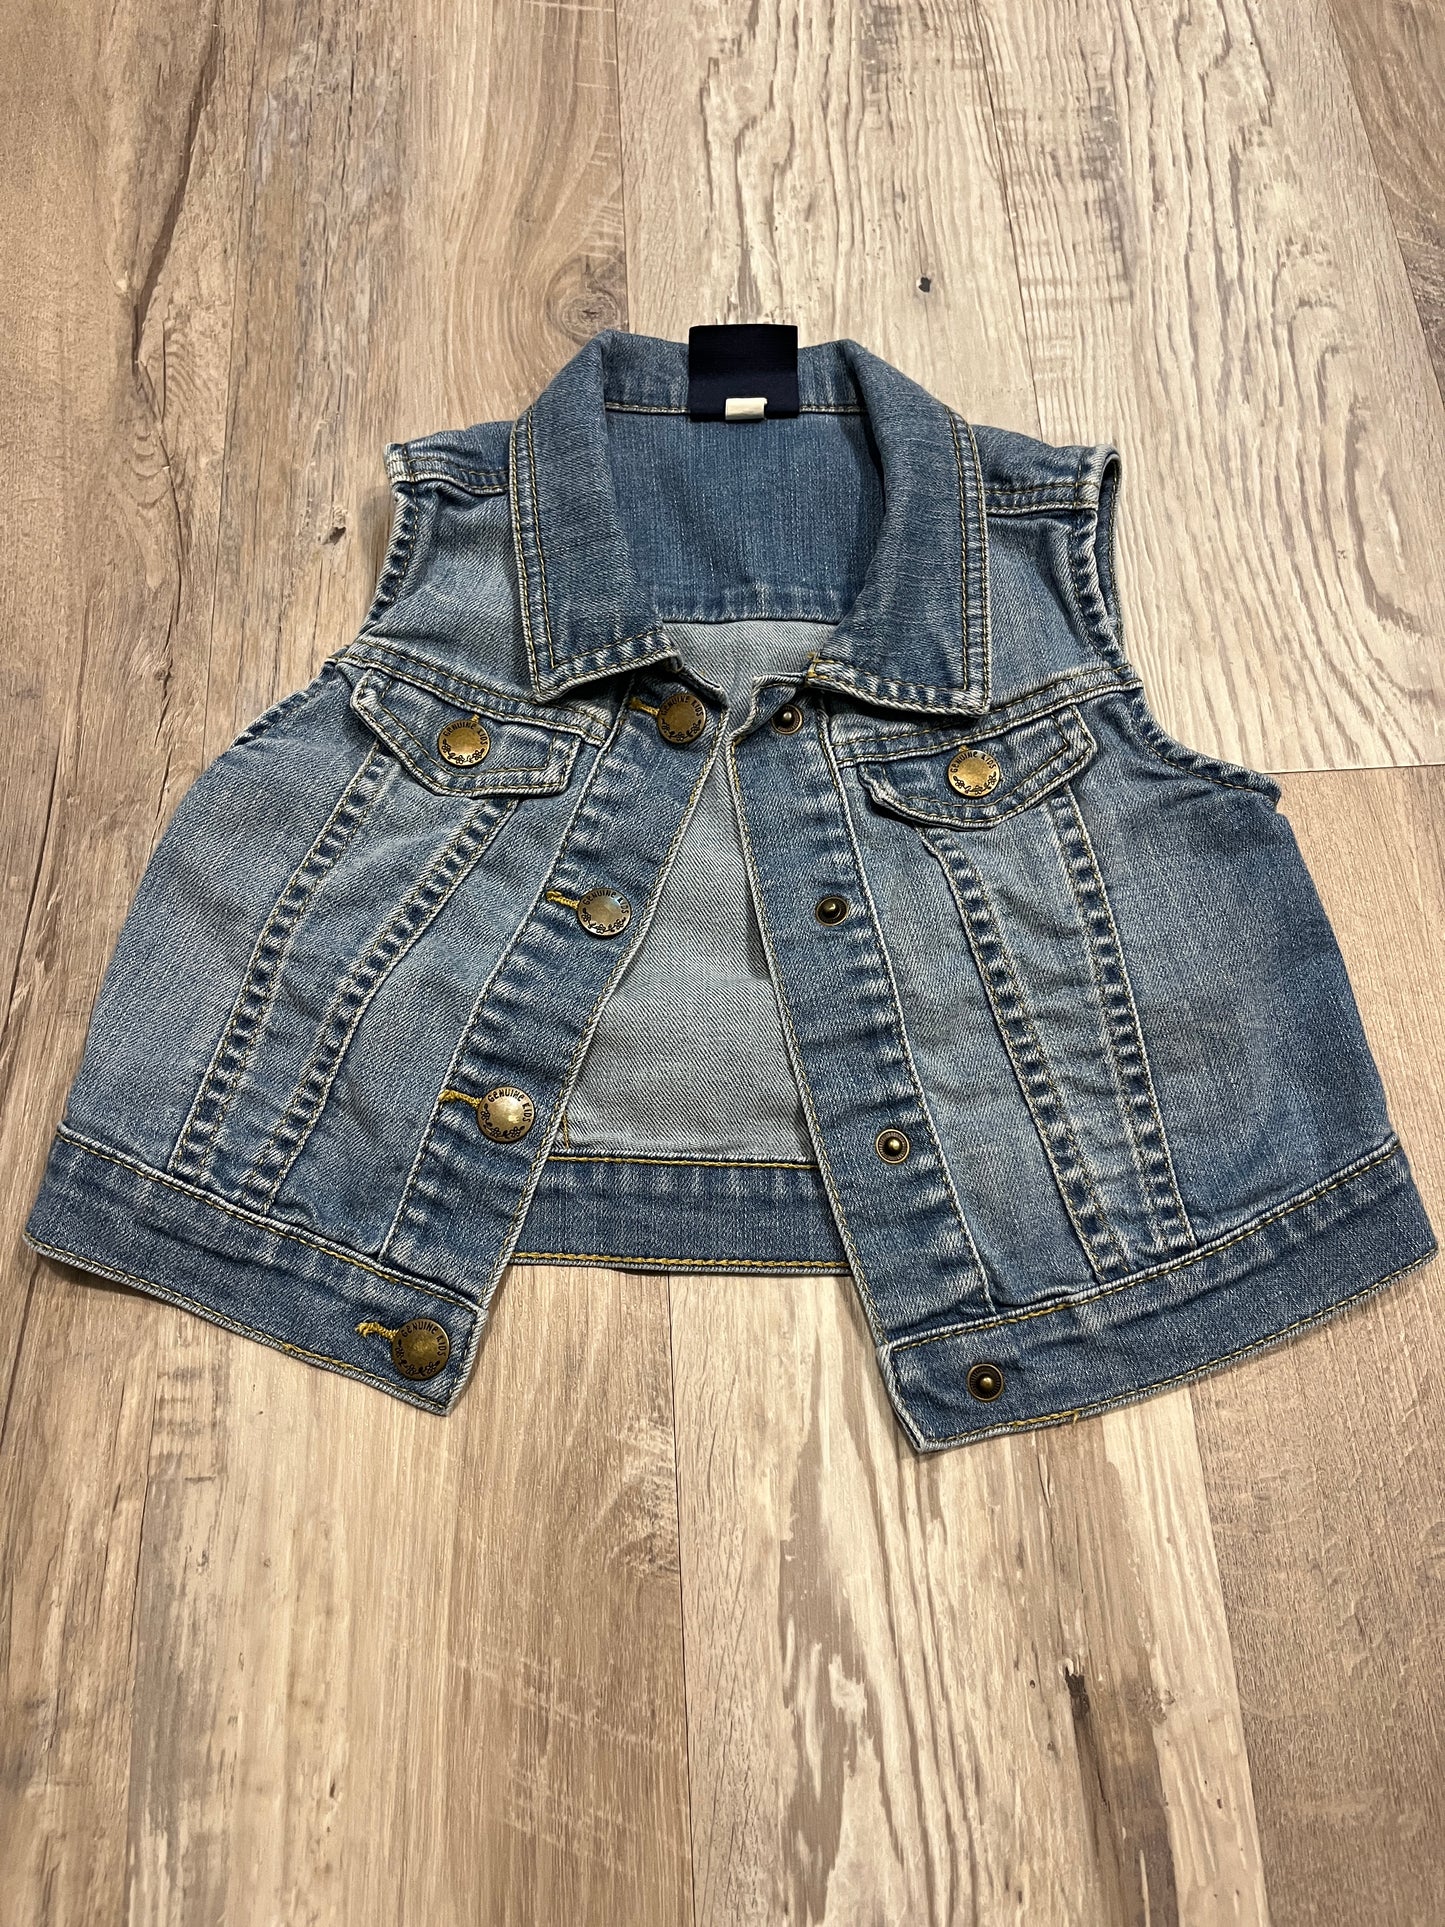 Girls OshKosh Jean Vest Size 4T